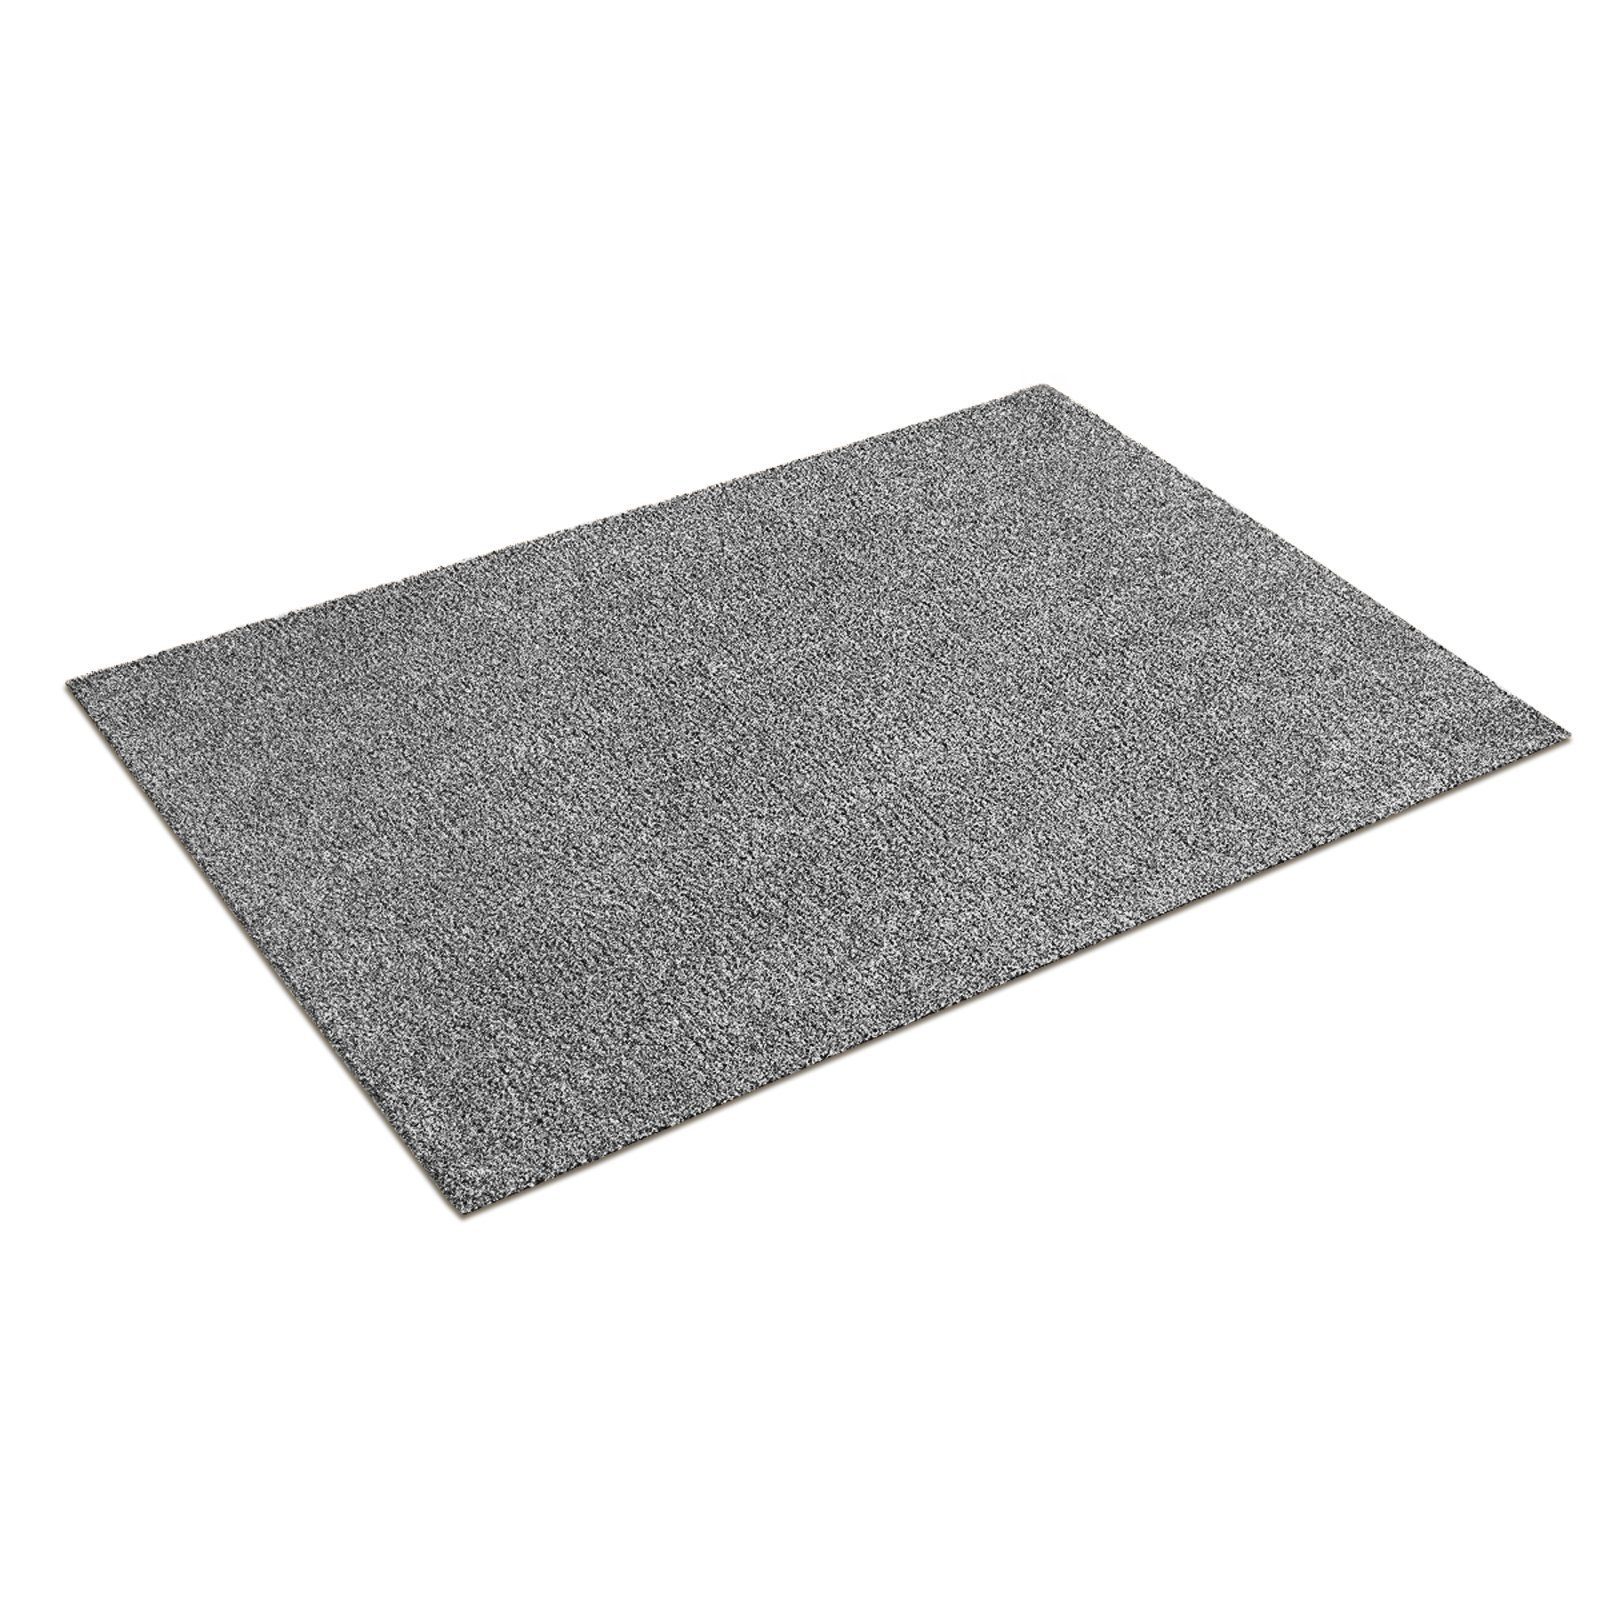 Fußbodenheizung, 6 waschbare Höhe: Sauberlaufmatte, Karat, Fußmatte rechteckig, Bari geeignet Grau, für mm